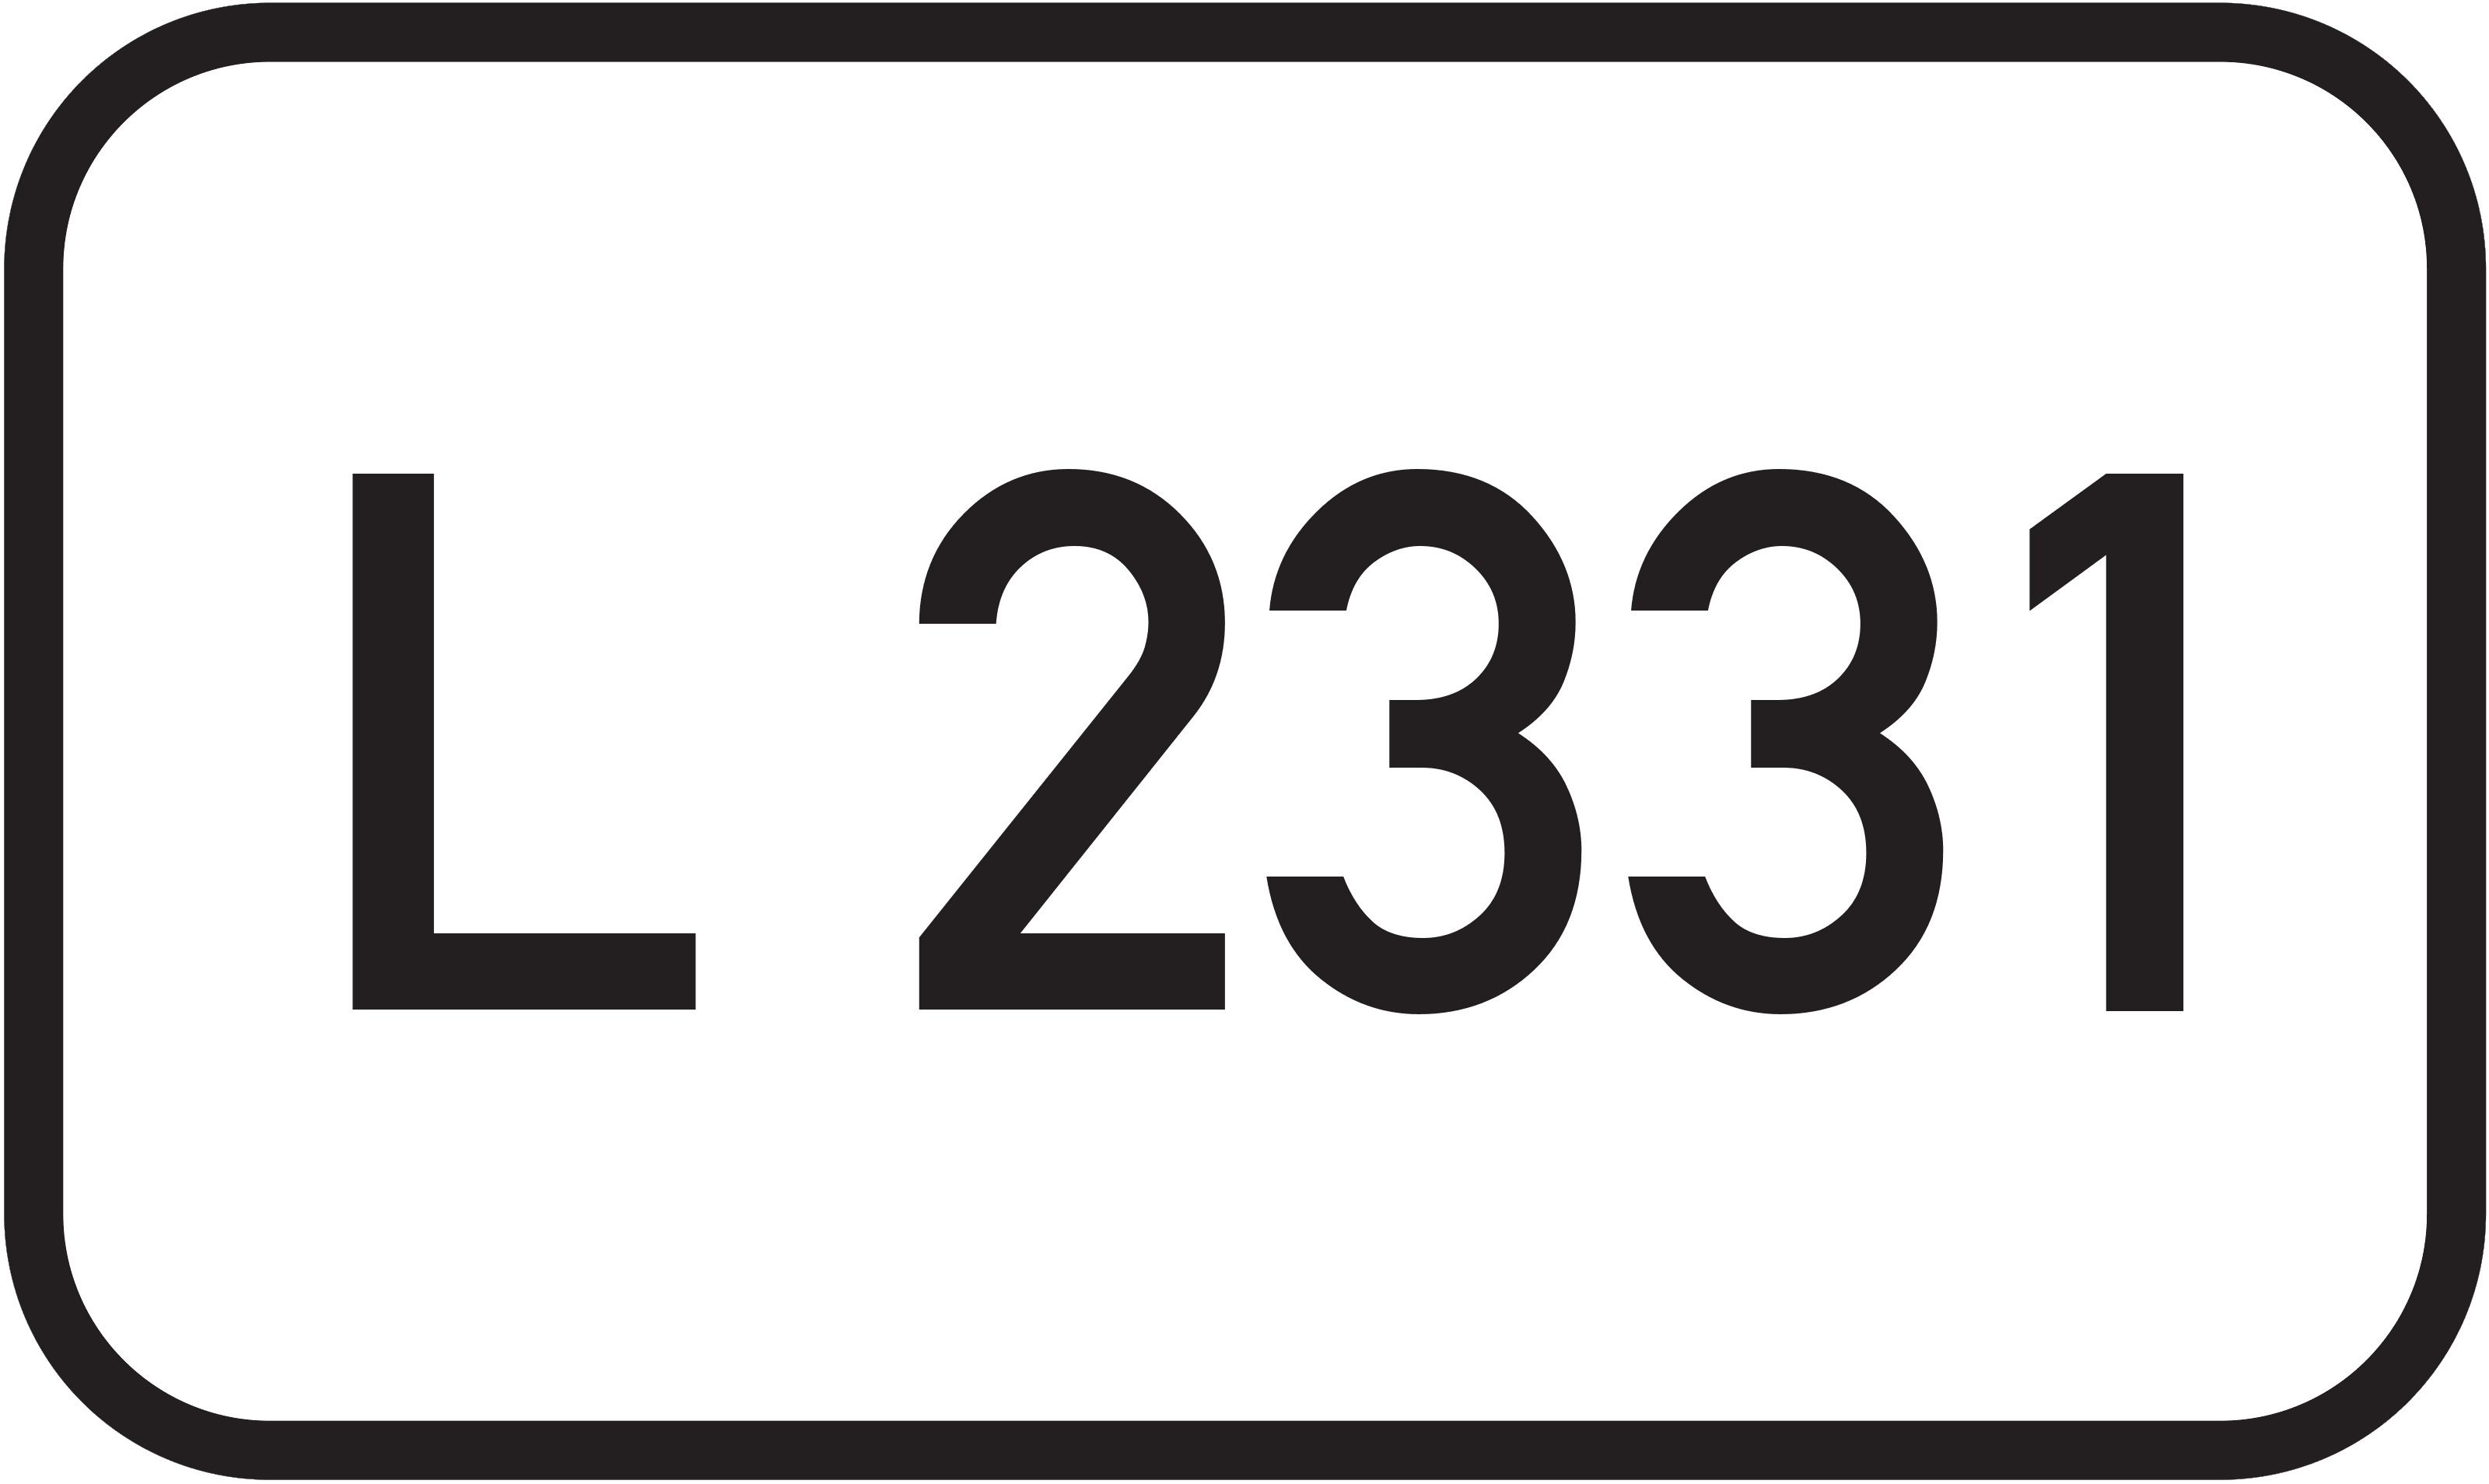 Landesstraße L 2331